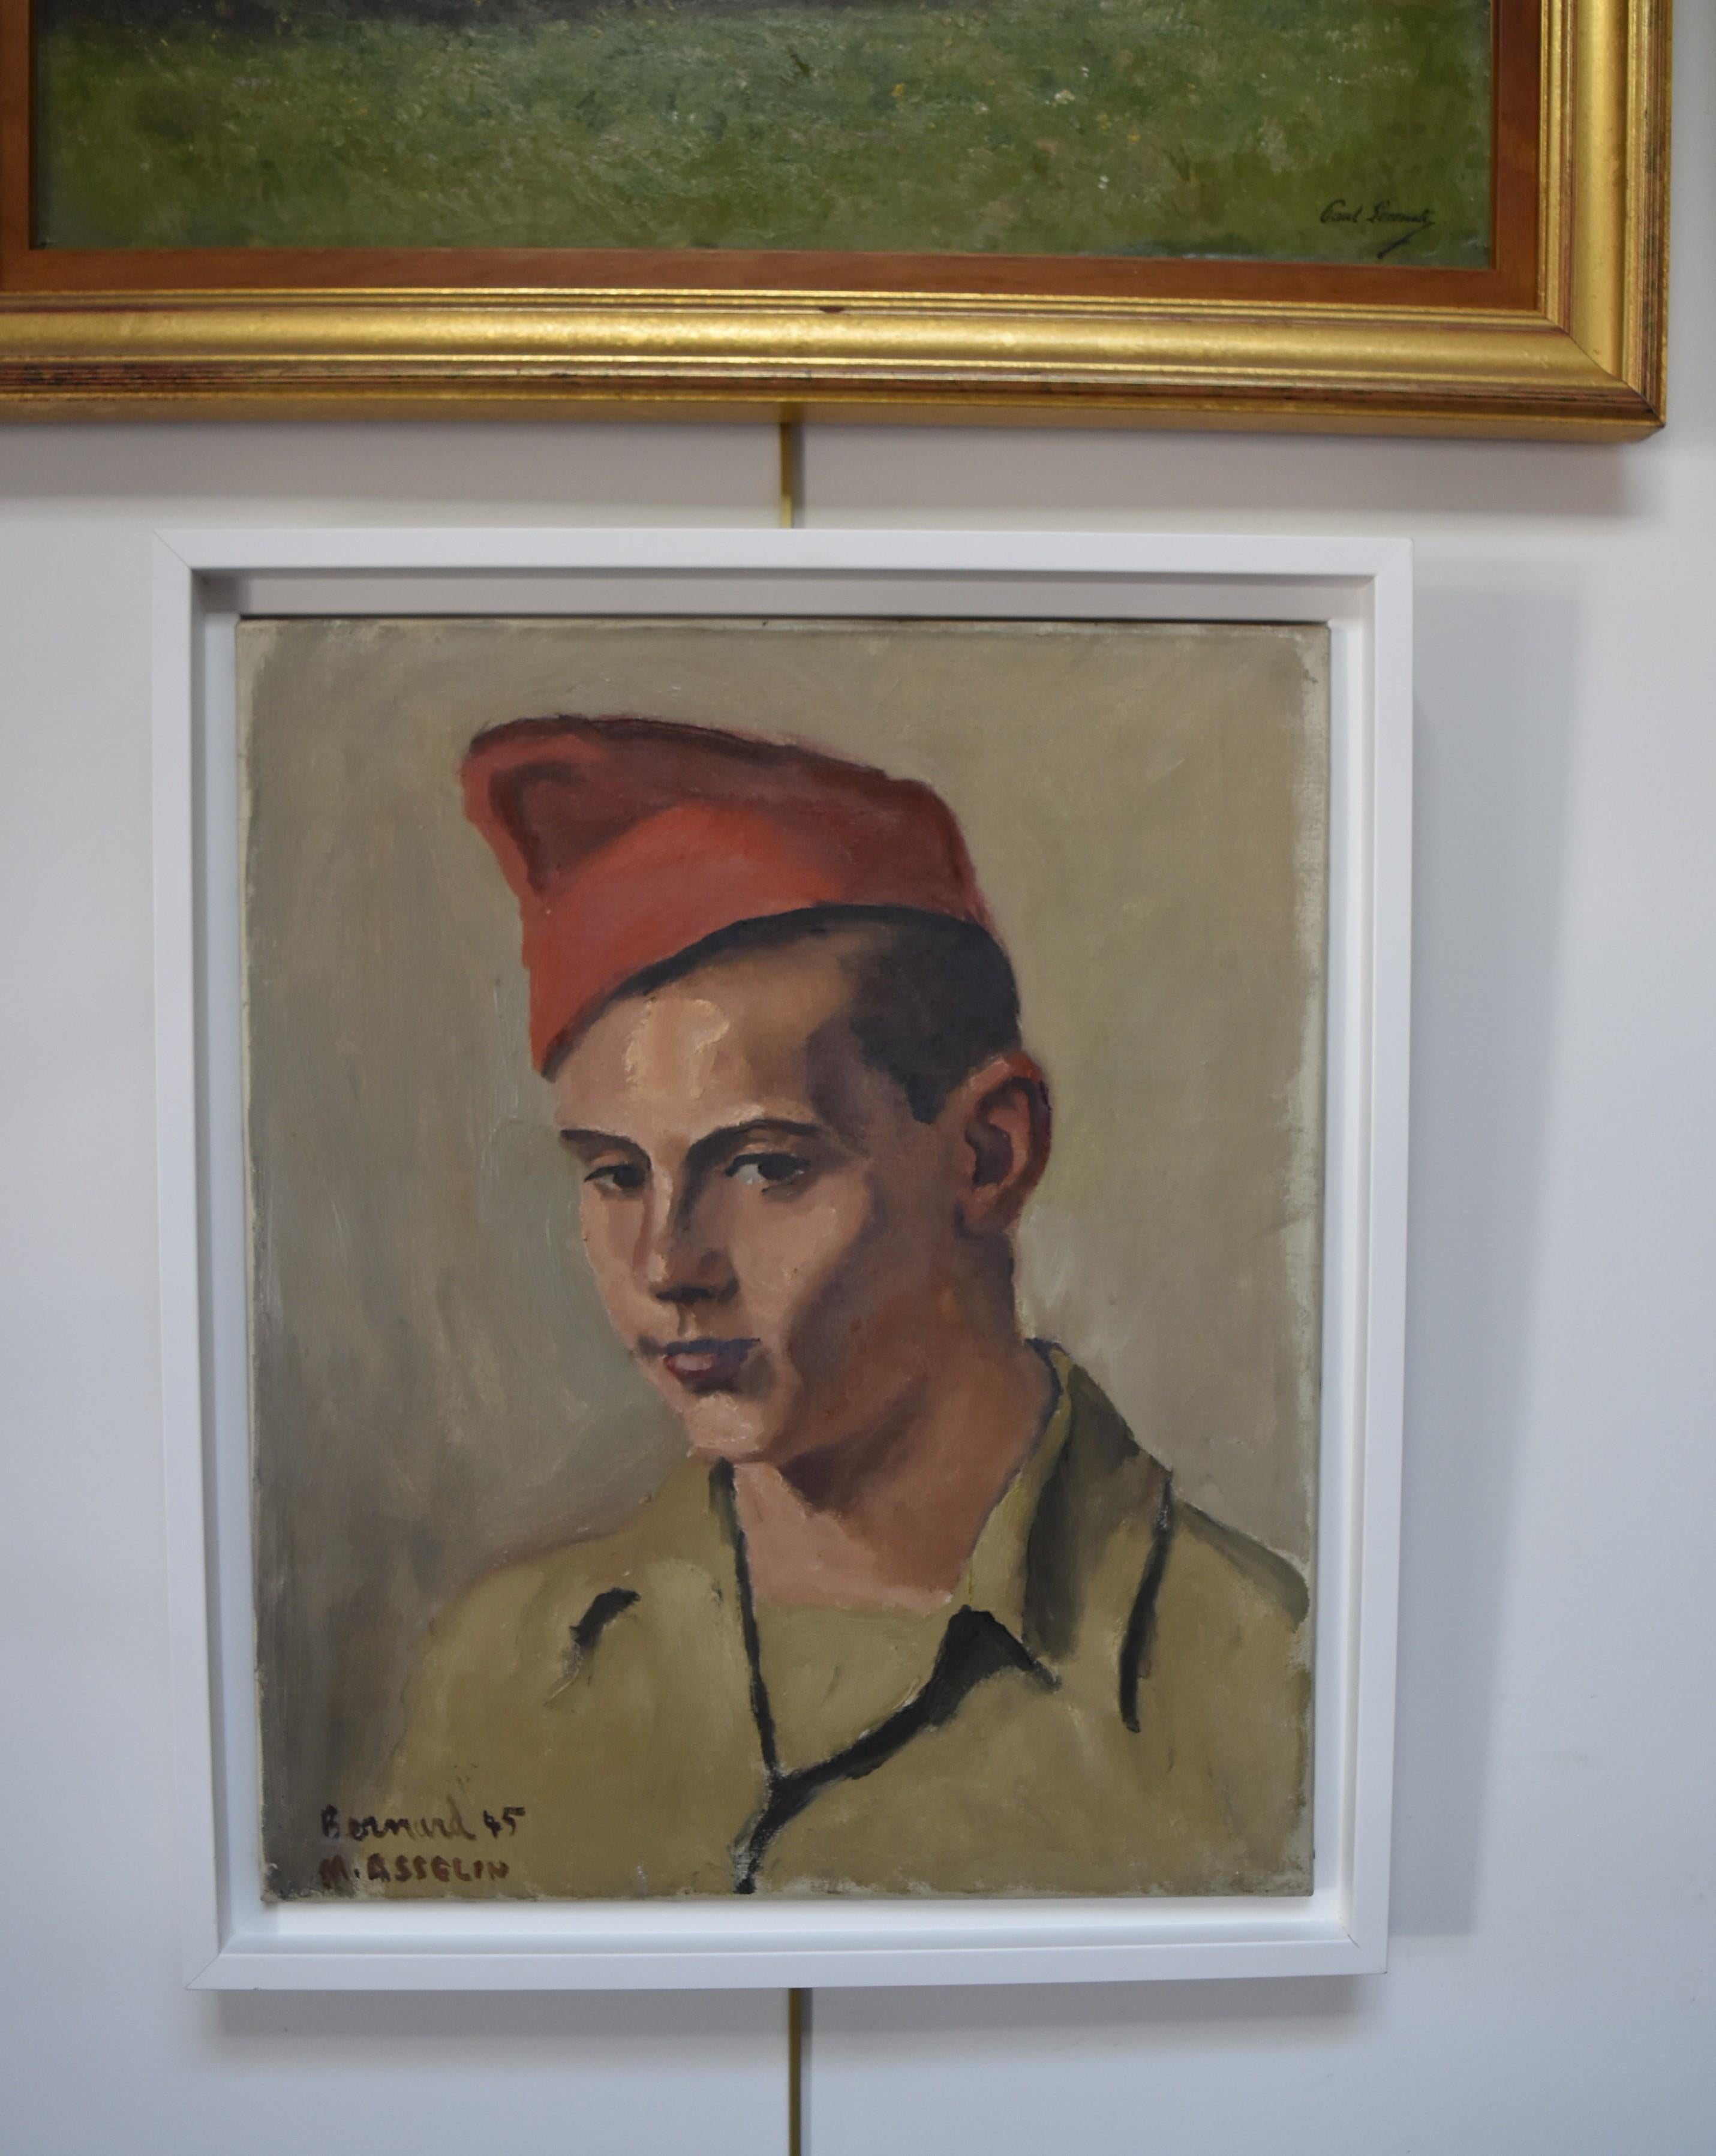 Maurice Asselin (1882-1947) Porträt von Bernard in Uniform, 1945, Öl auf Leinwand 4